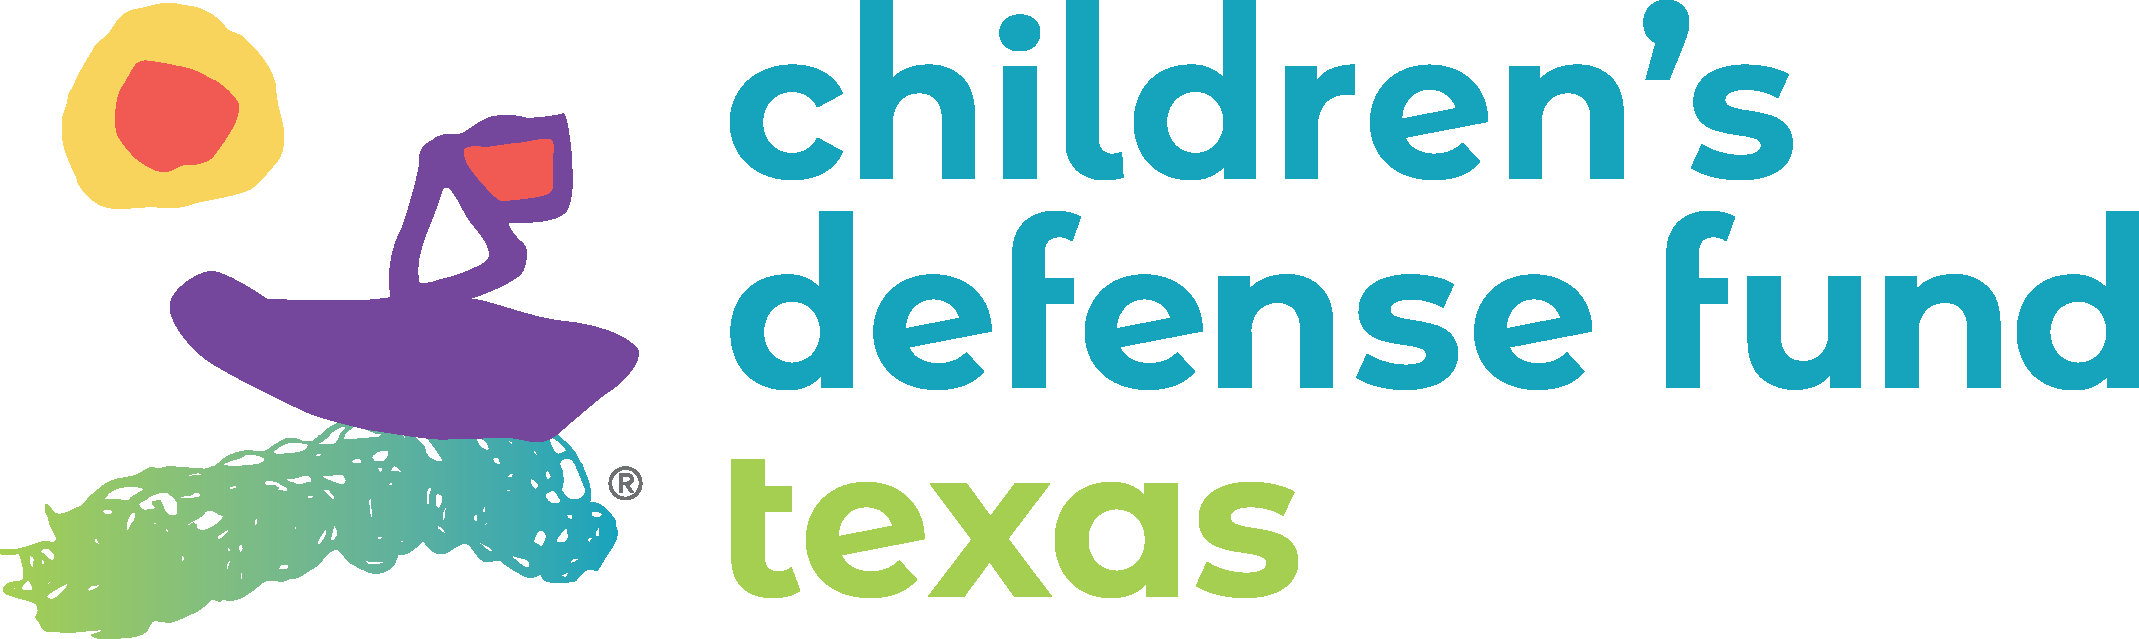 Children’s Defense Fund - Texas